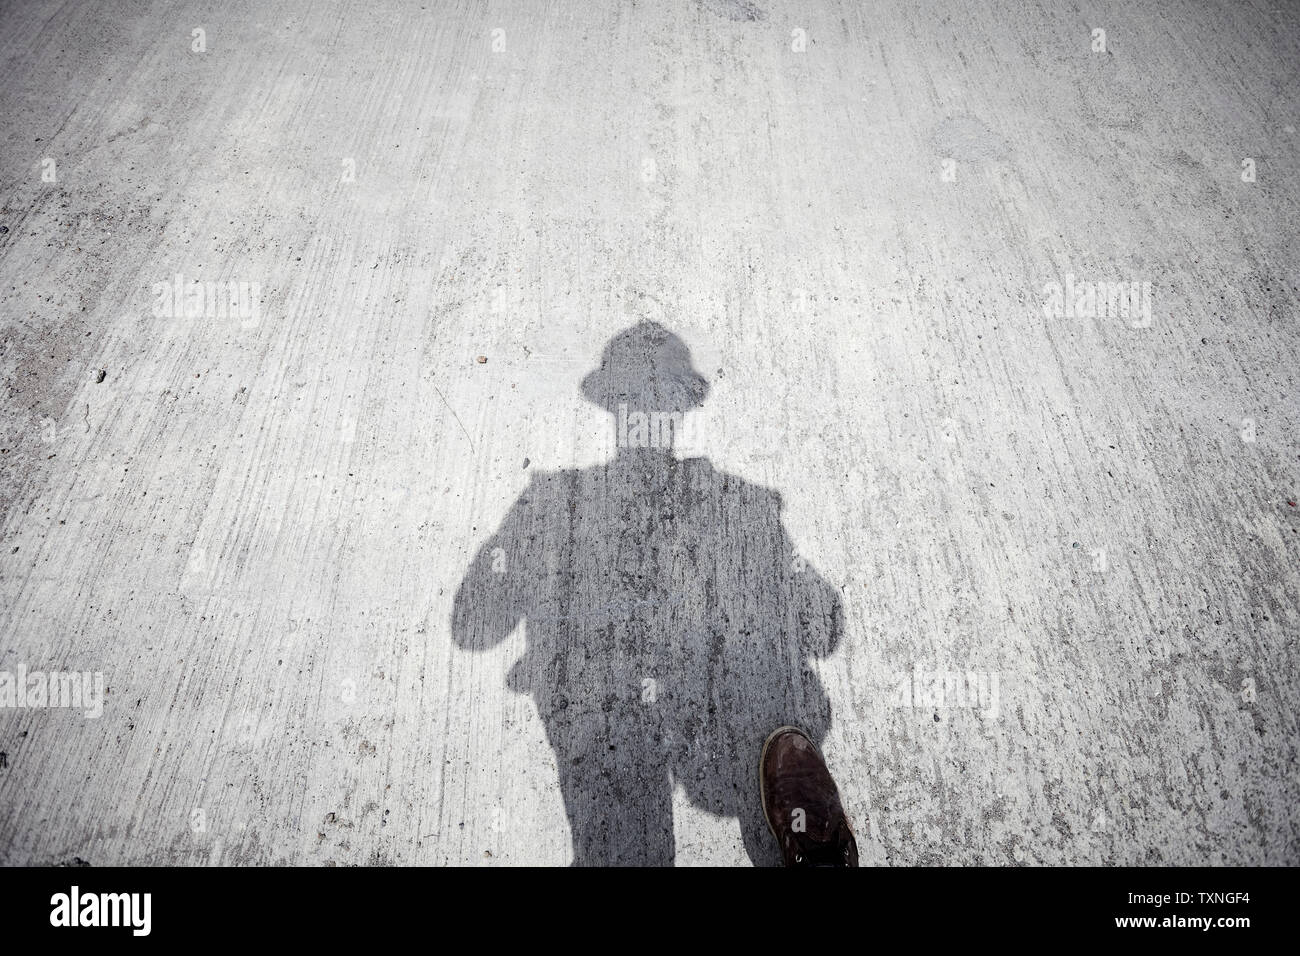 Die Bauarbeiter Schatten auf grauen Betonplatte, persönliche Perspektive Stockfoto